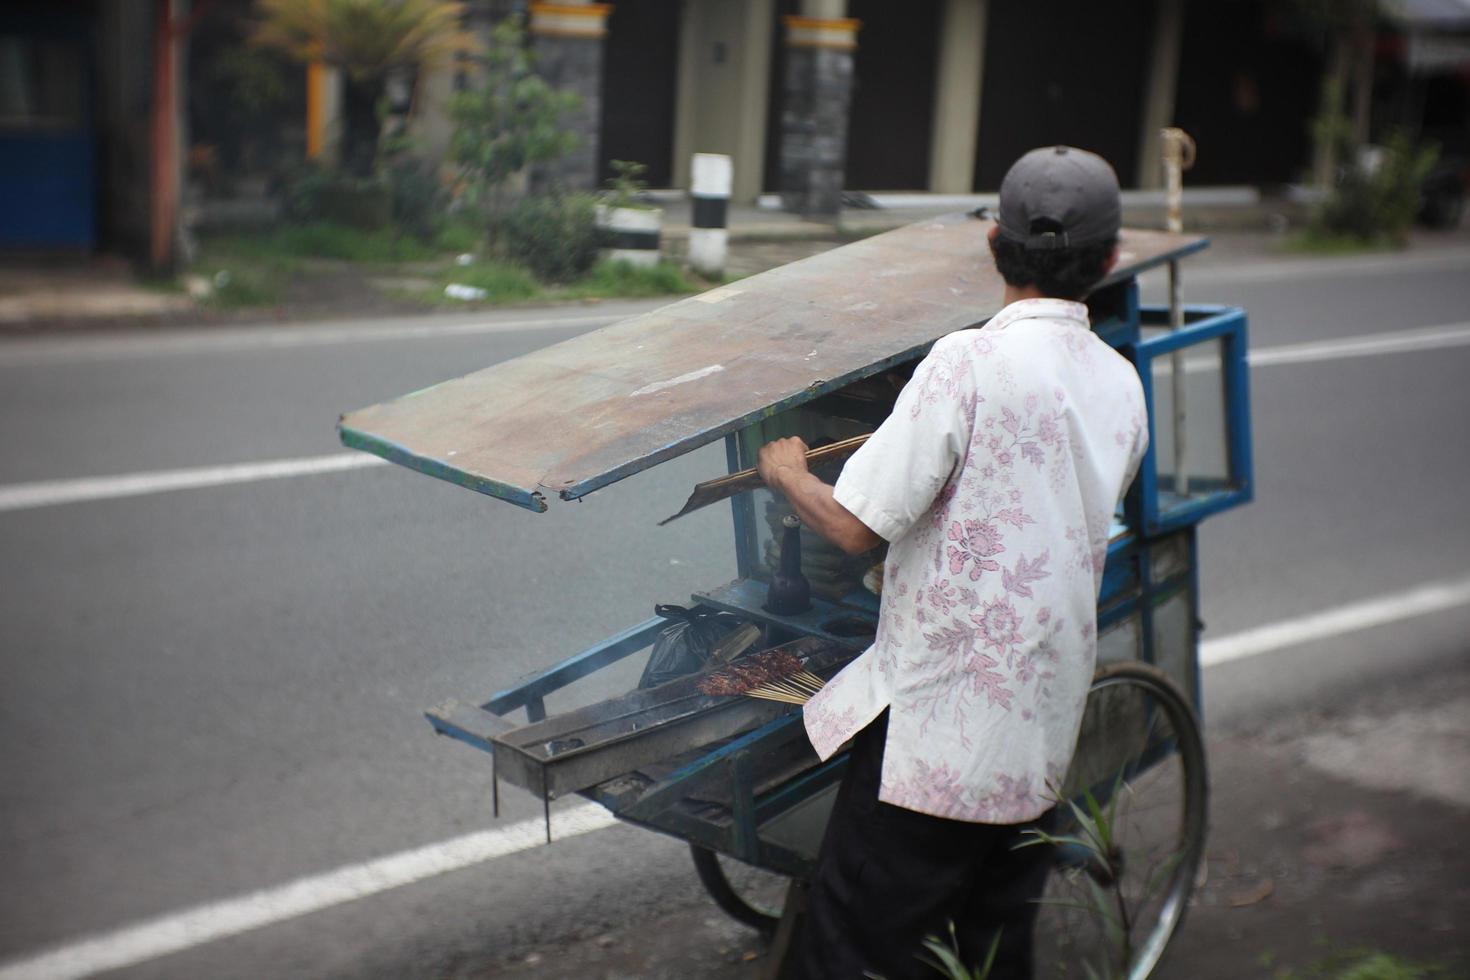 magelang 05 10 2022. los vendedores de sate están quemando de forma manual y sencilla foto